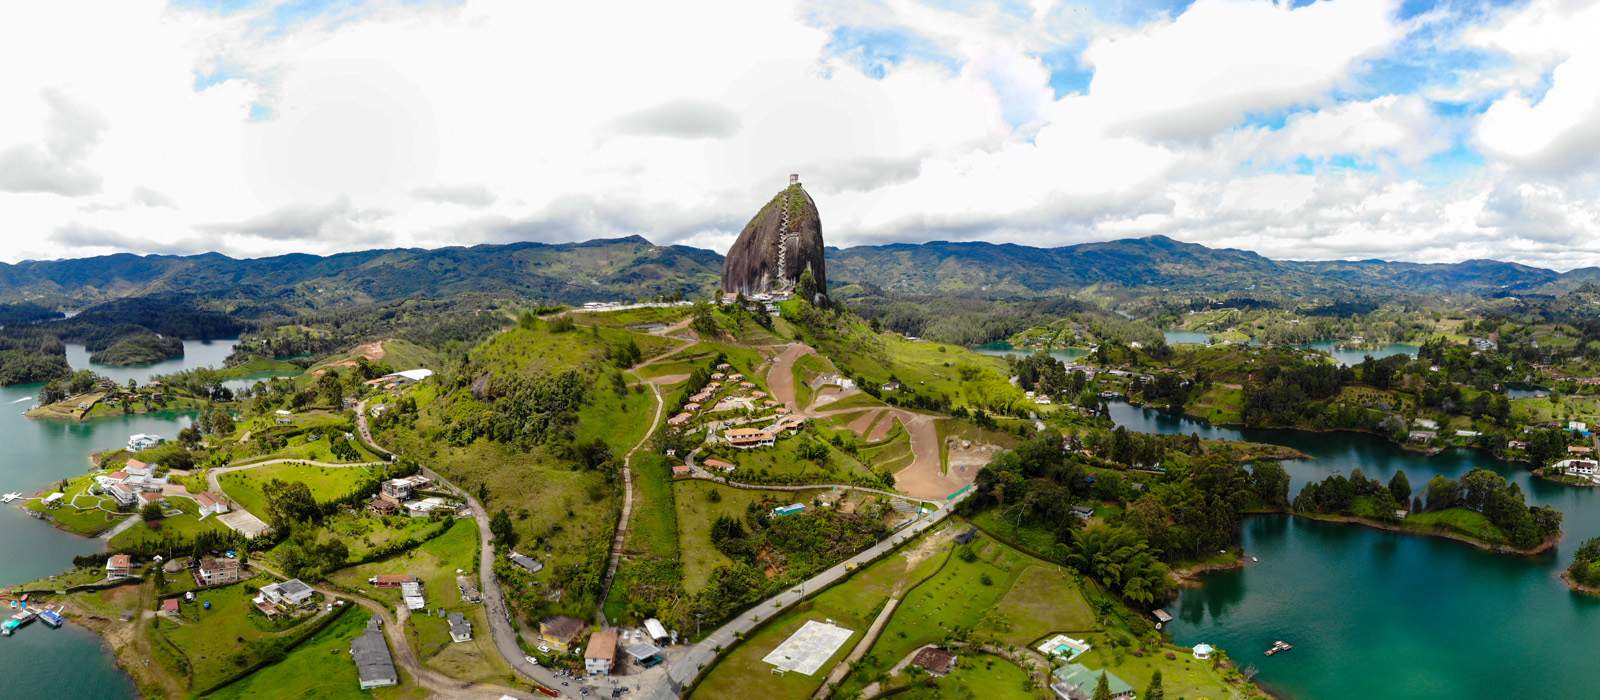 incentive trips in Colombia - El Peñol